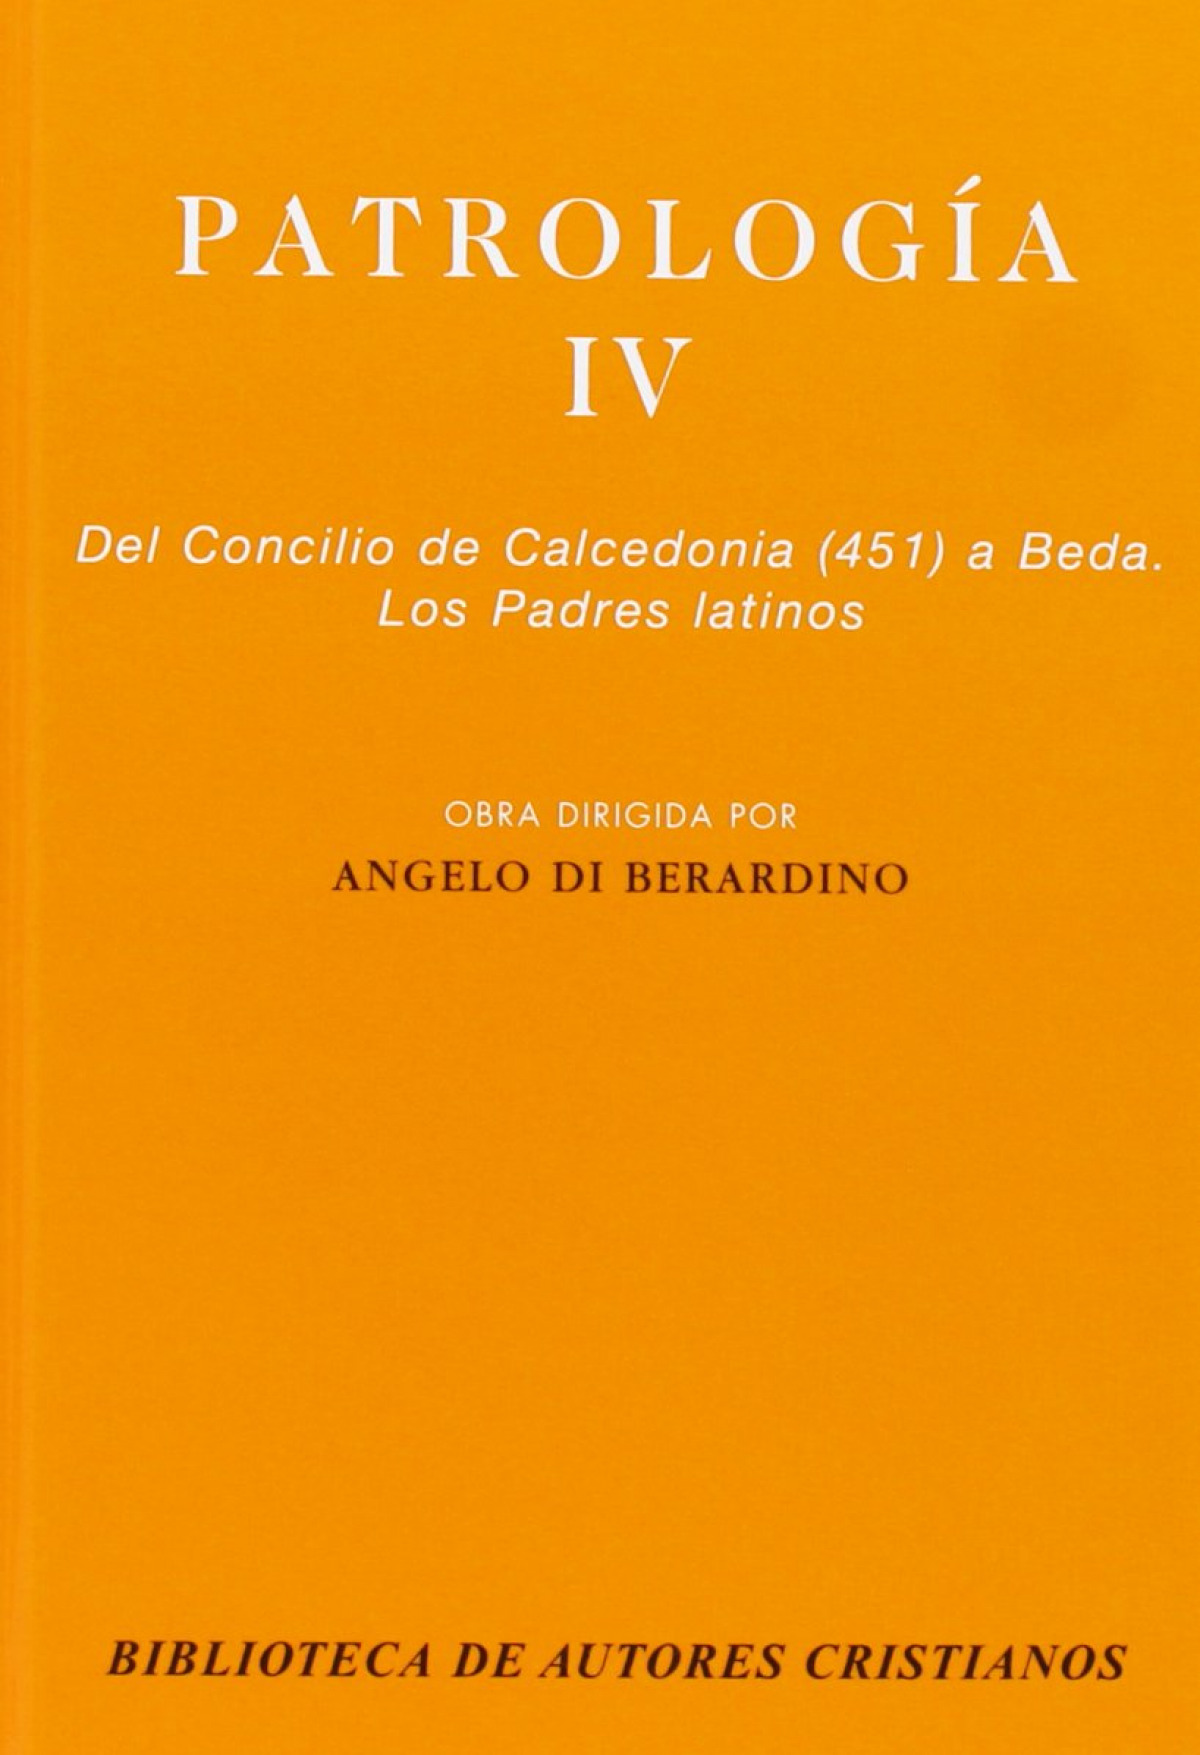 Patrología IV Del concilio de calcedonia - Vv.Aa.